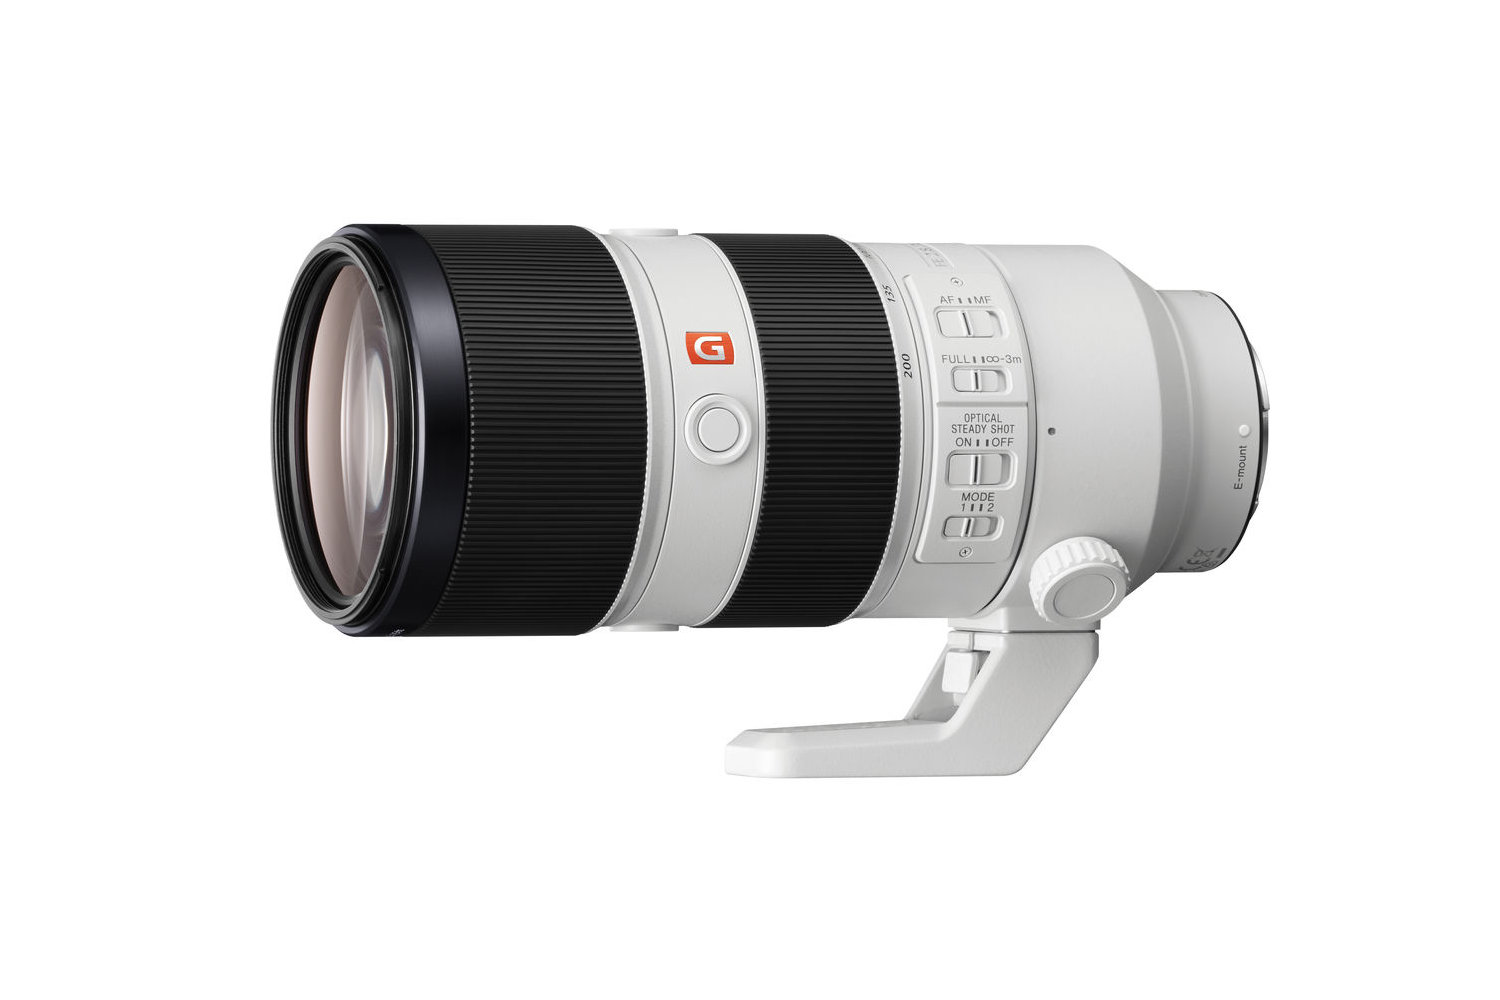 Best Sony lens: Sony FE 70-200mm f/2.8 G Master OSS